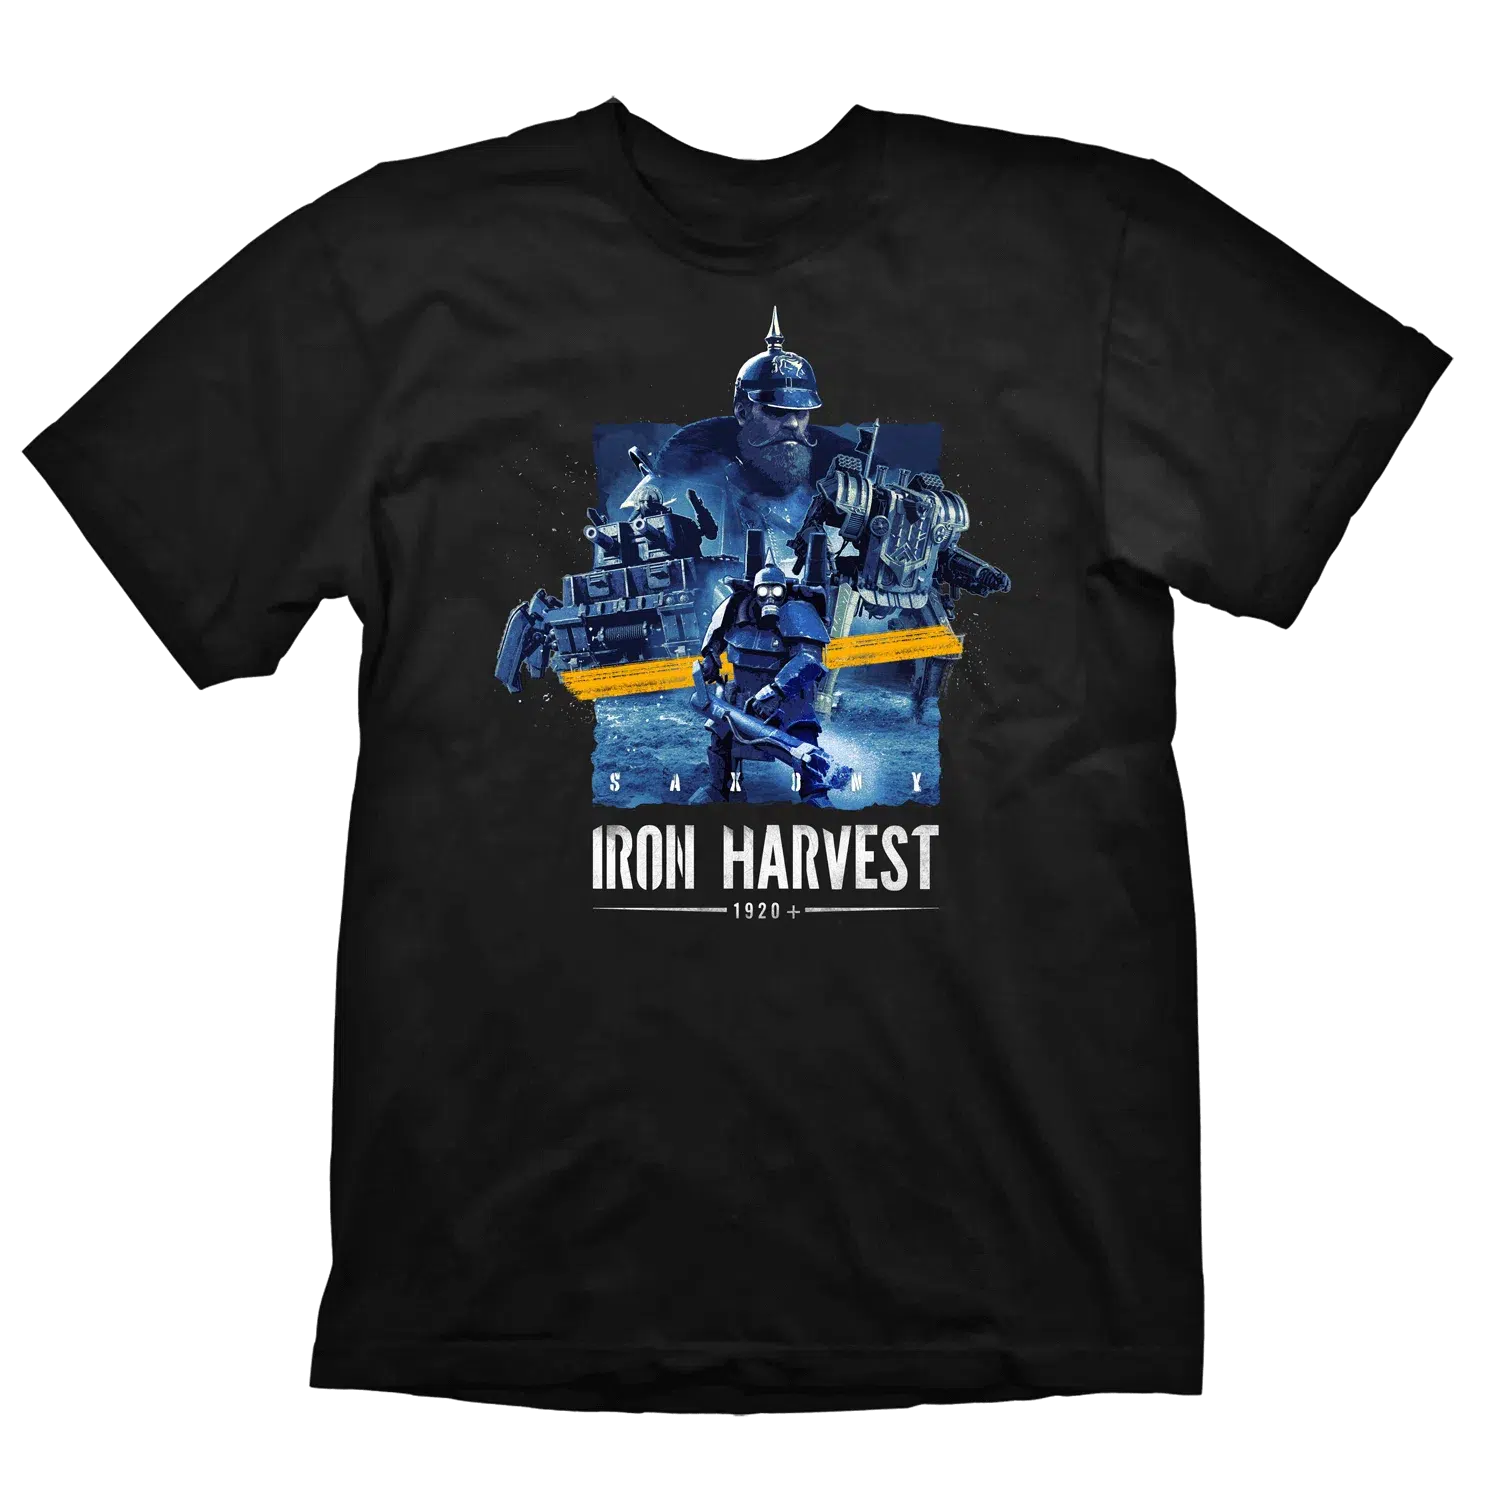 Iron Harvest T-Shirt "Saxony" Black XL